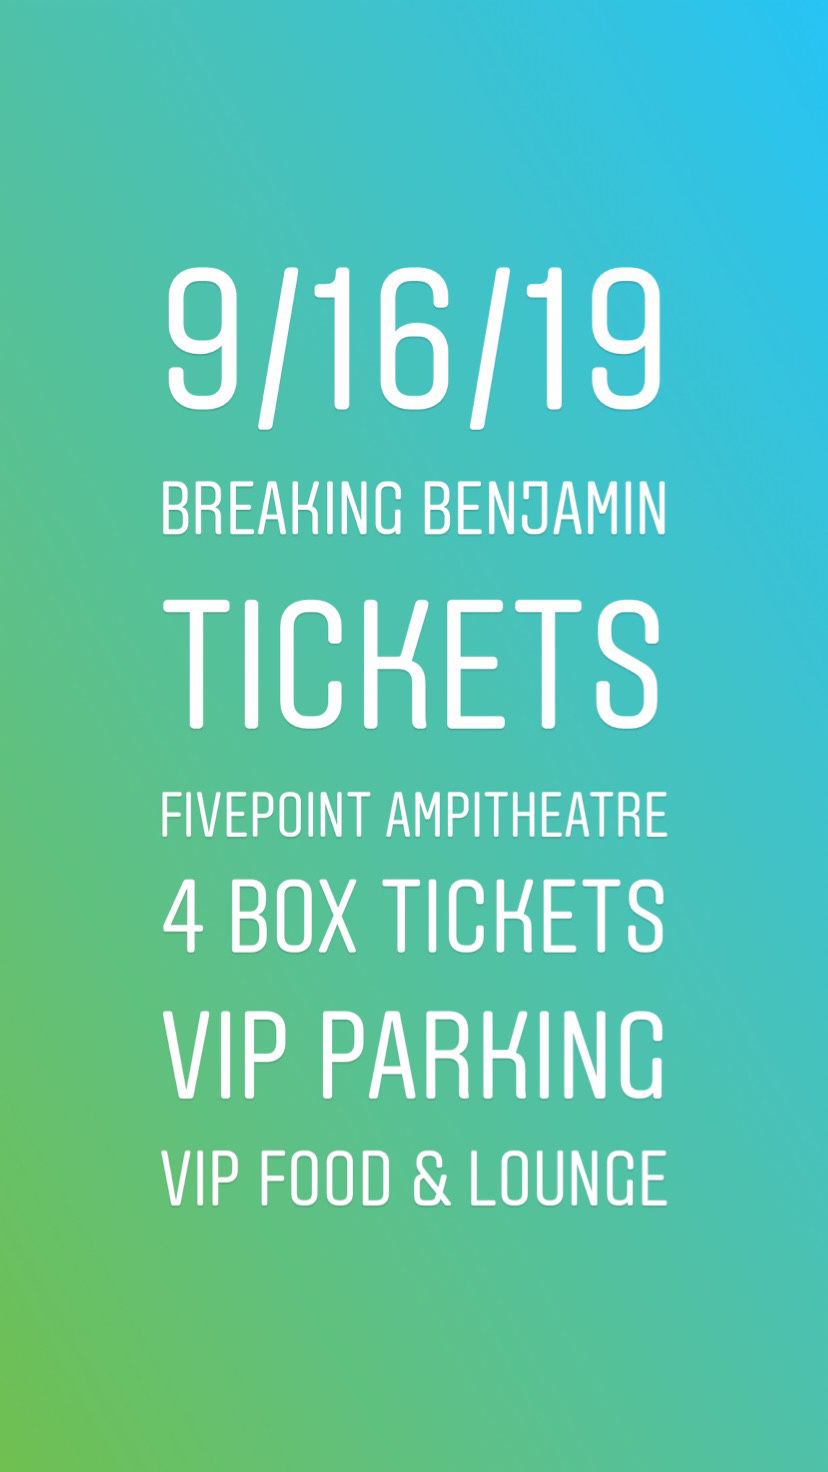 Breaking Benjamin Tickets 9/16/19